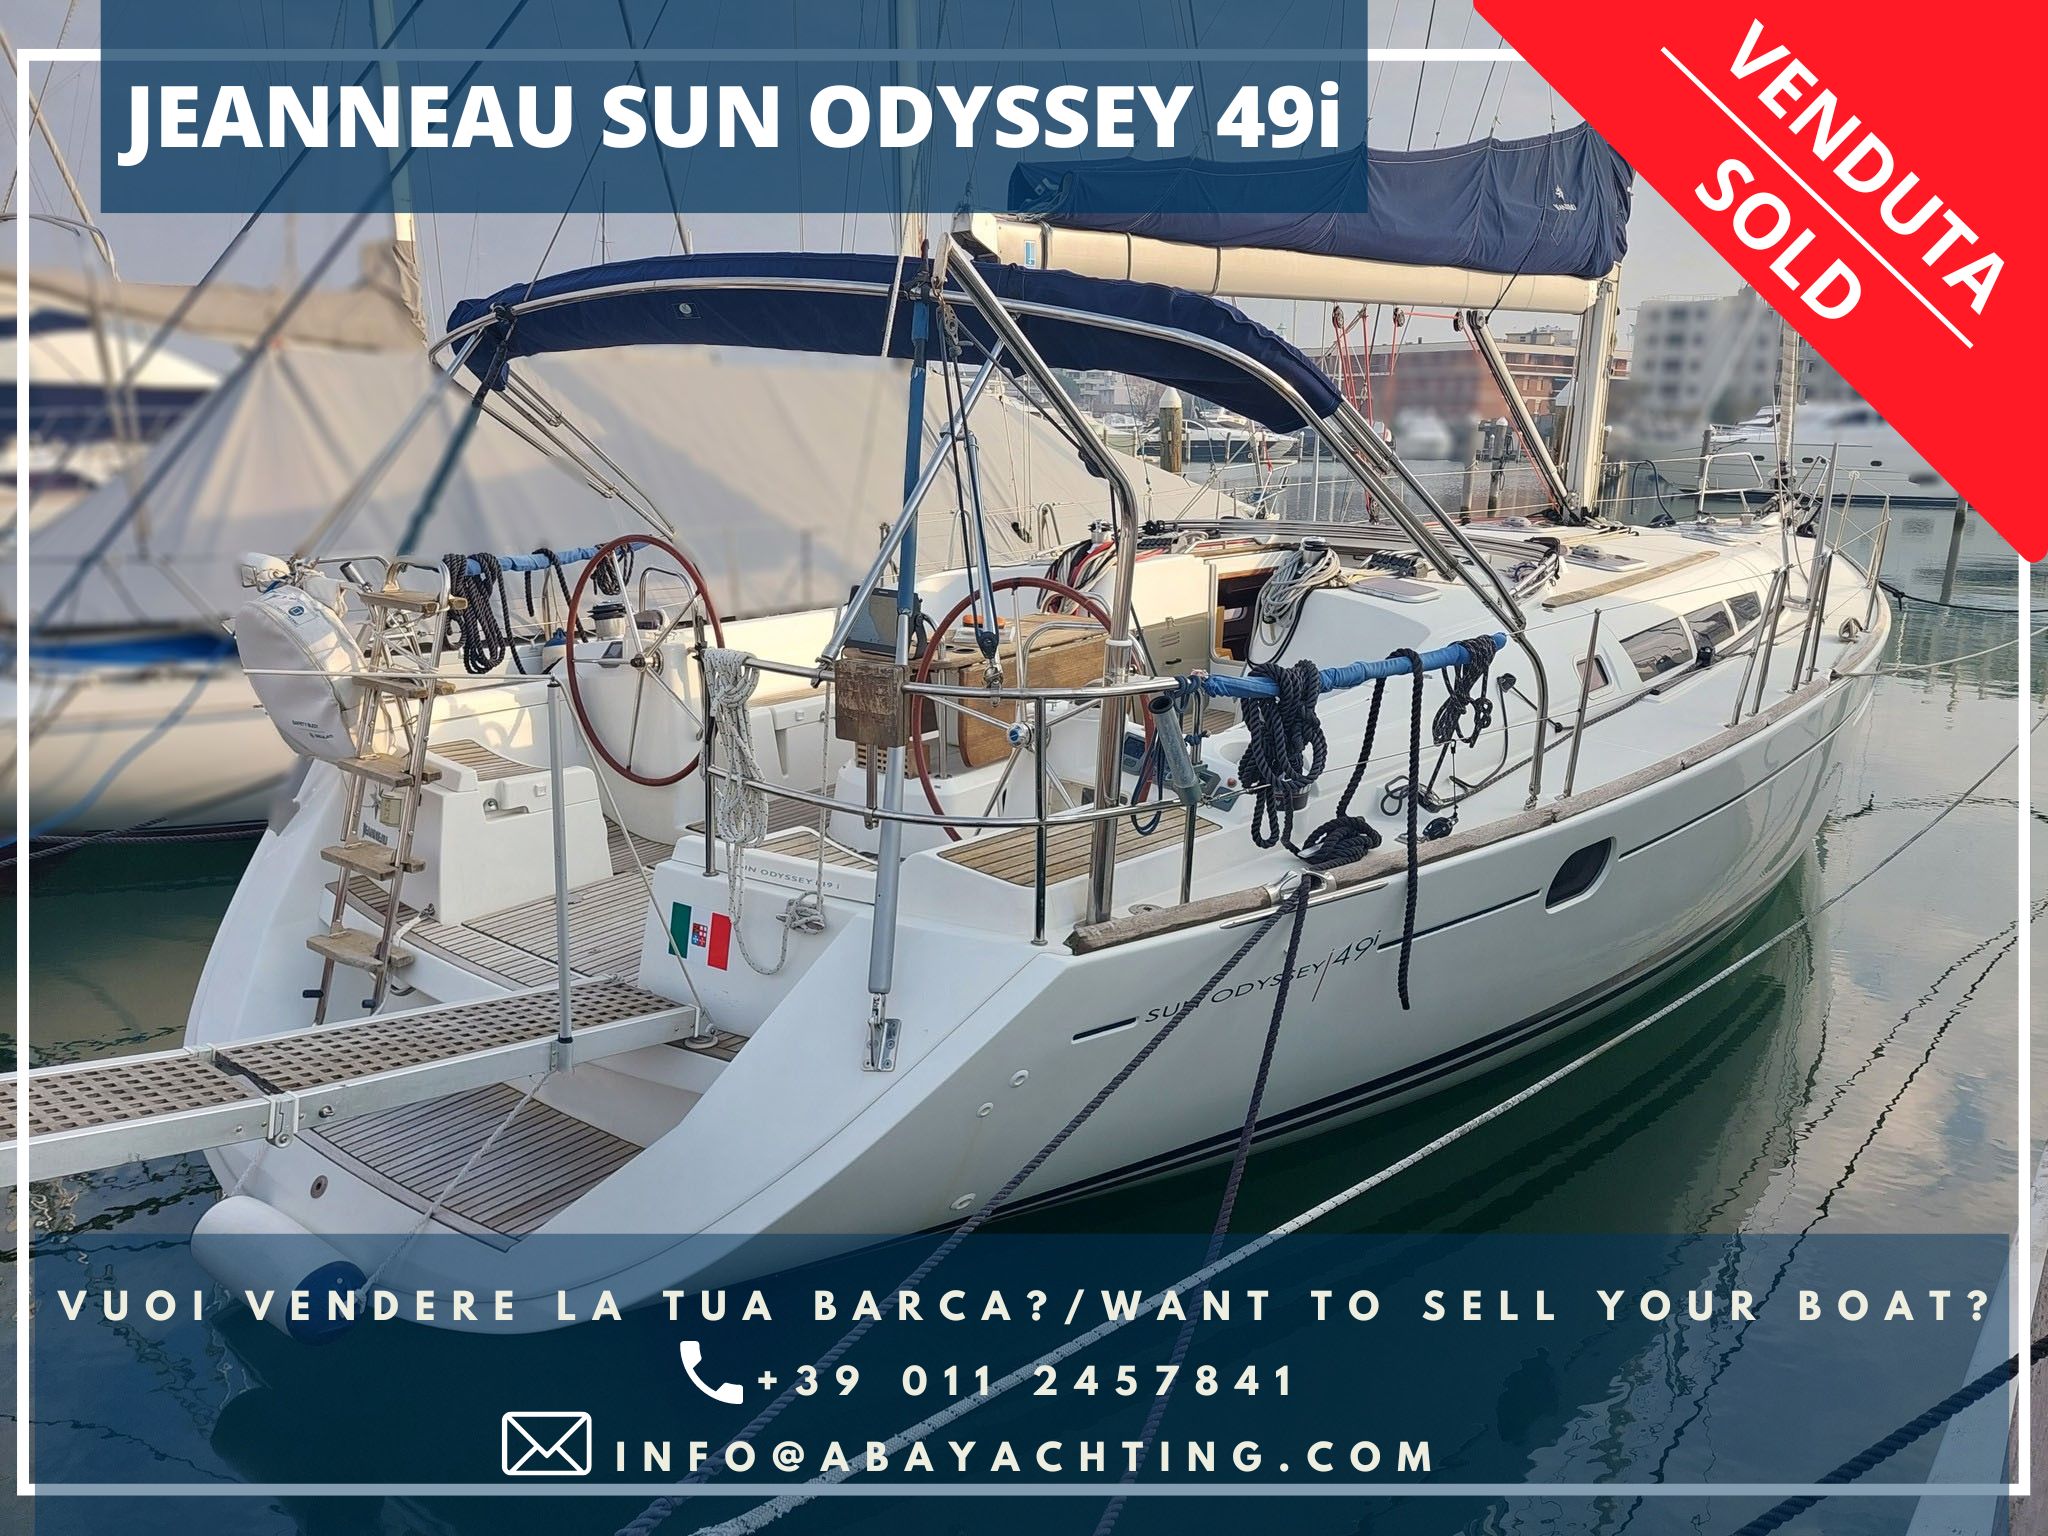 Jeanneau Sun Odyssey 49i sold